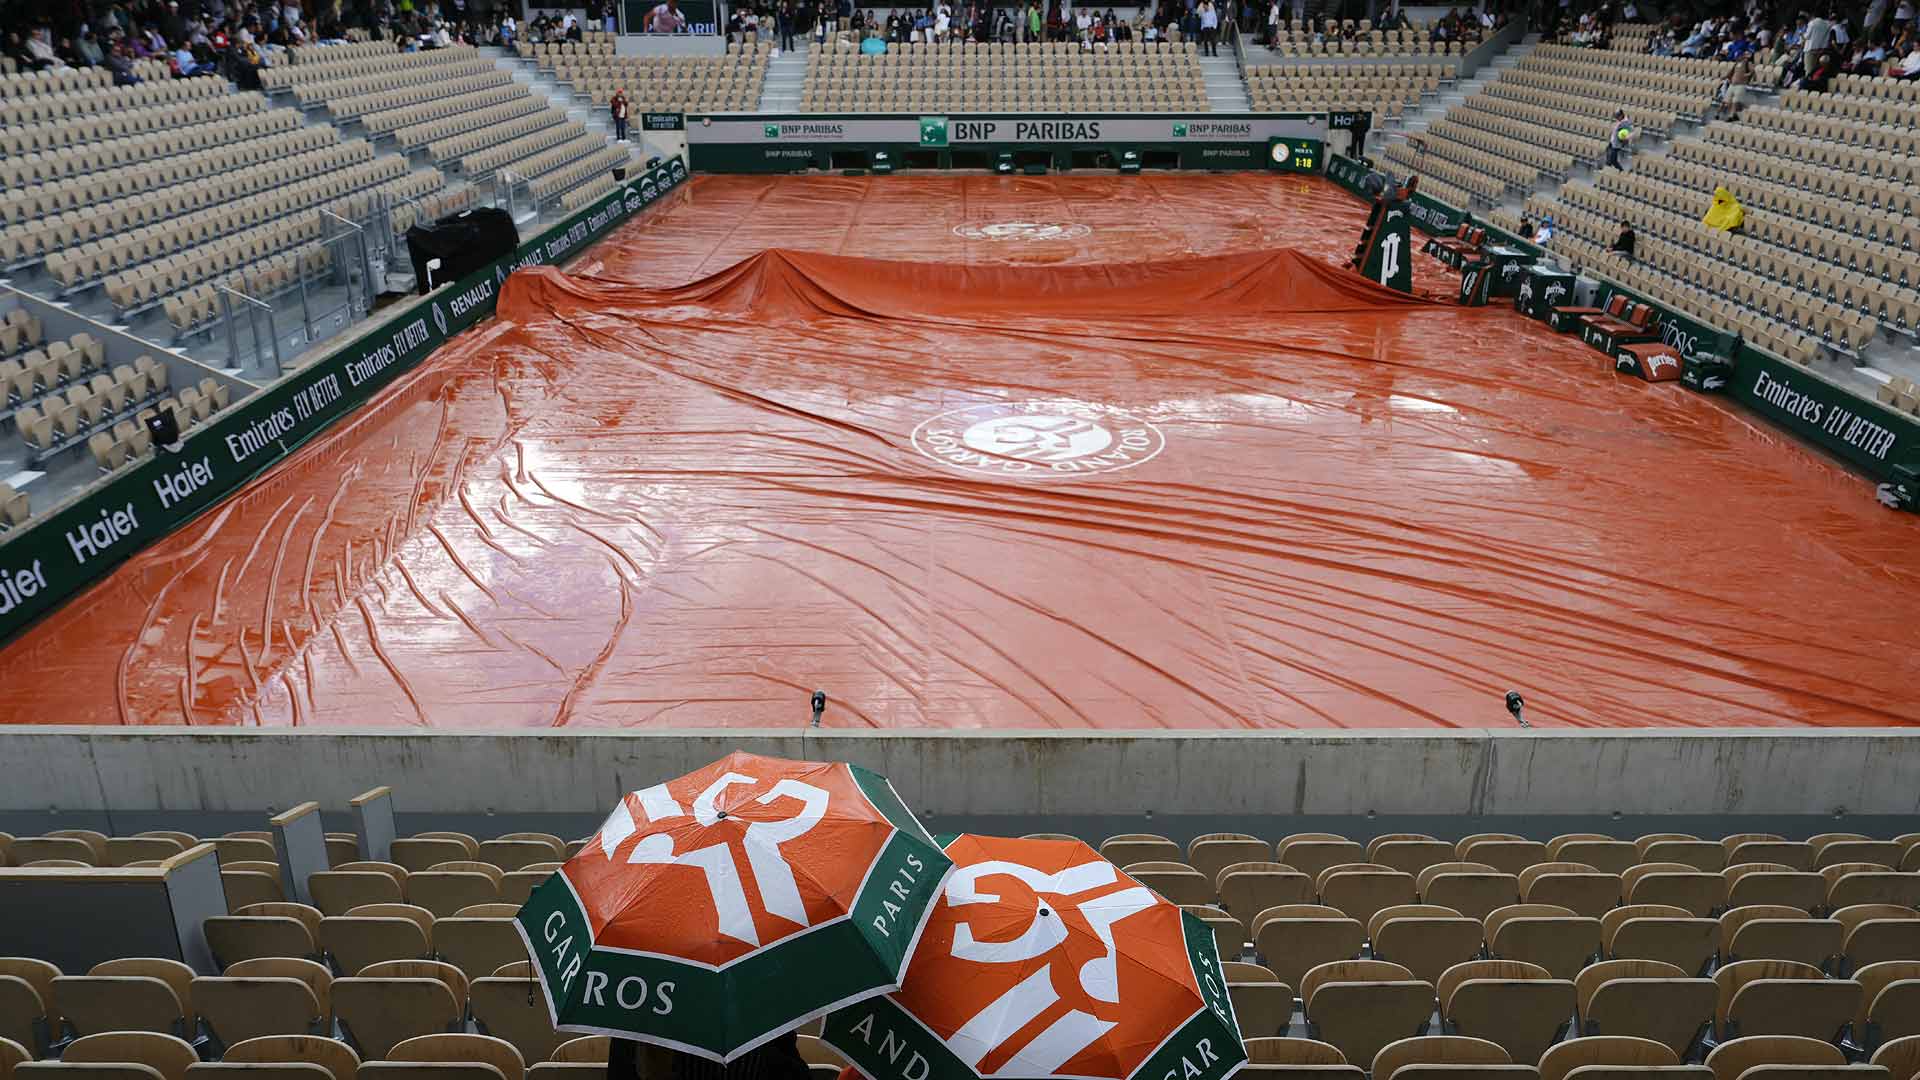 Rain delays start of Day 3 at Roland Garros